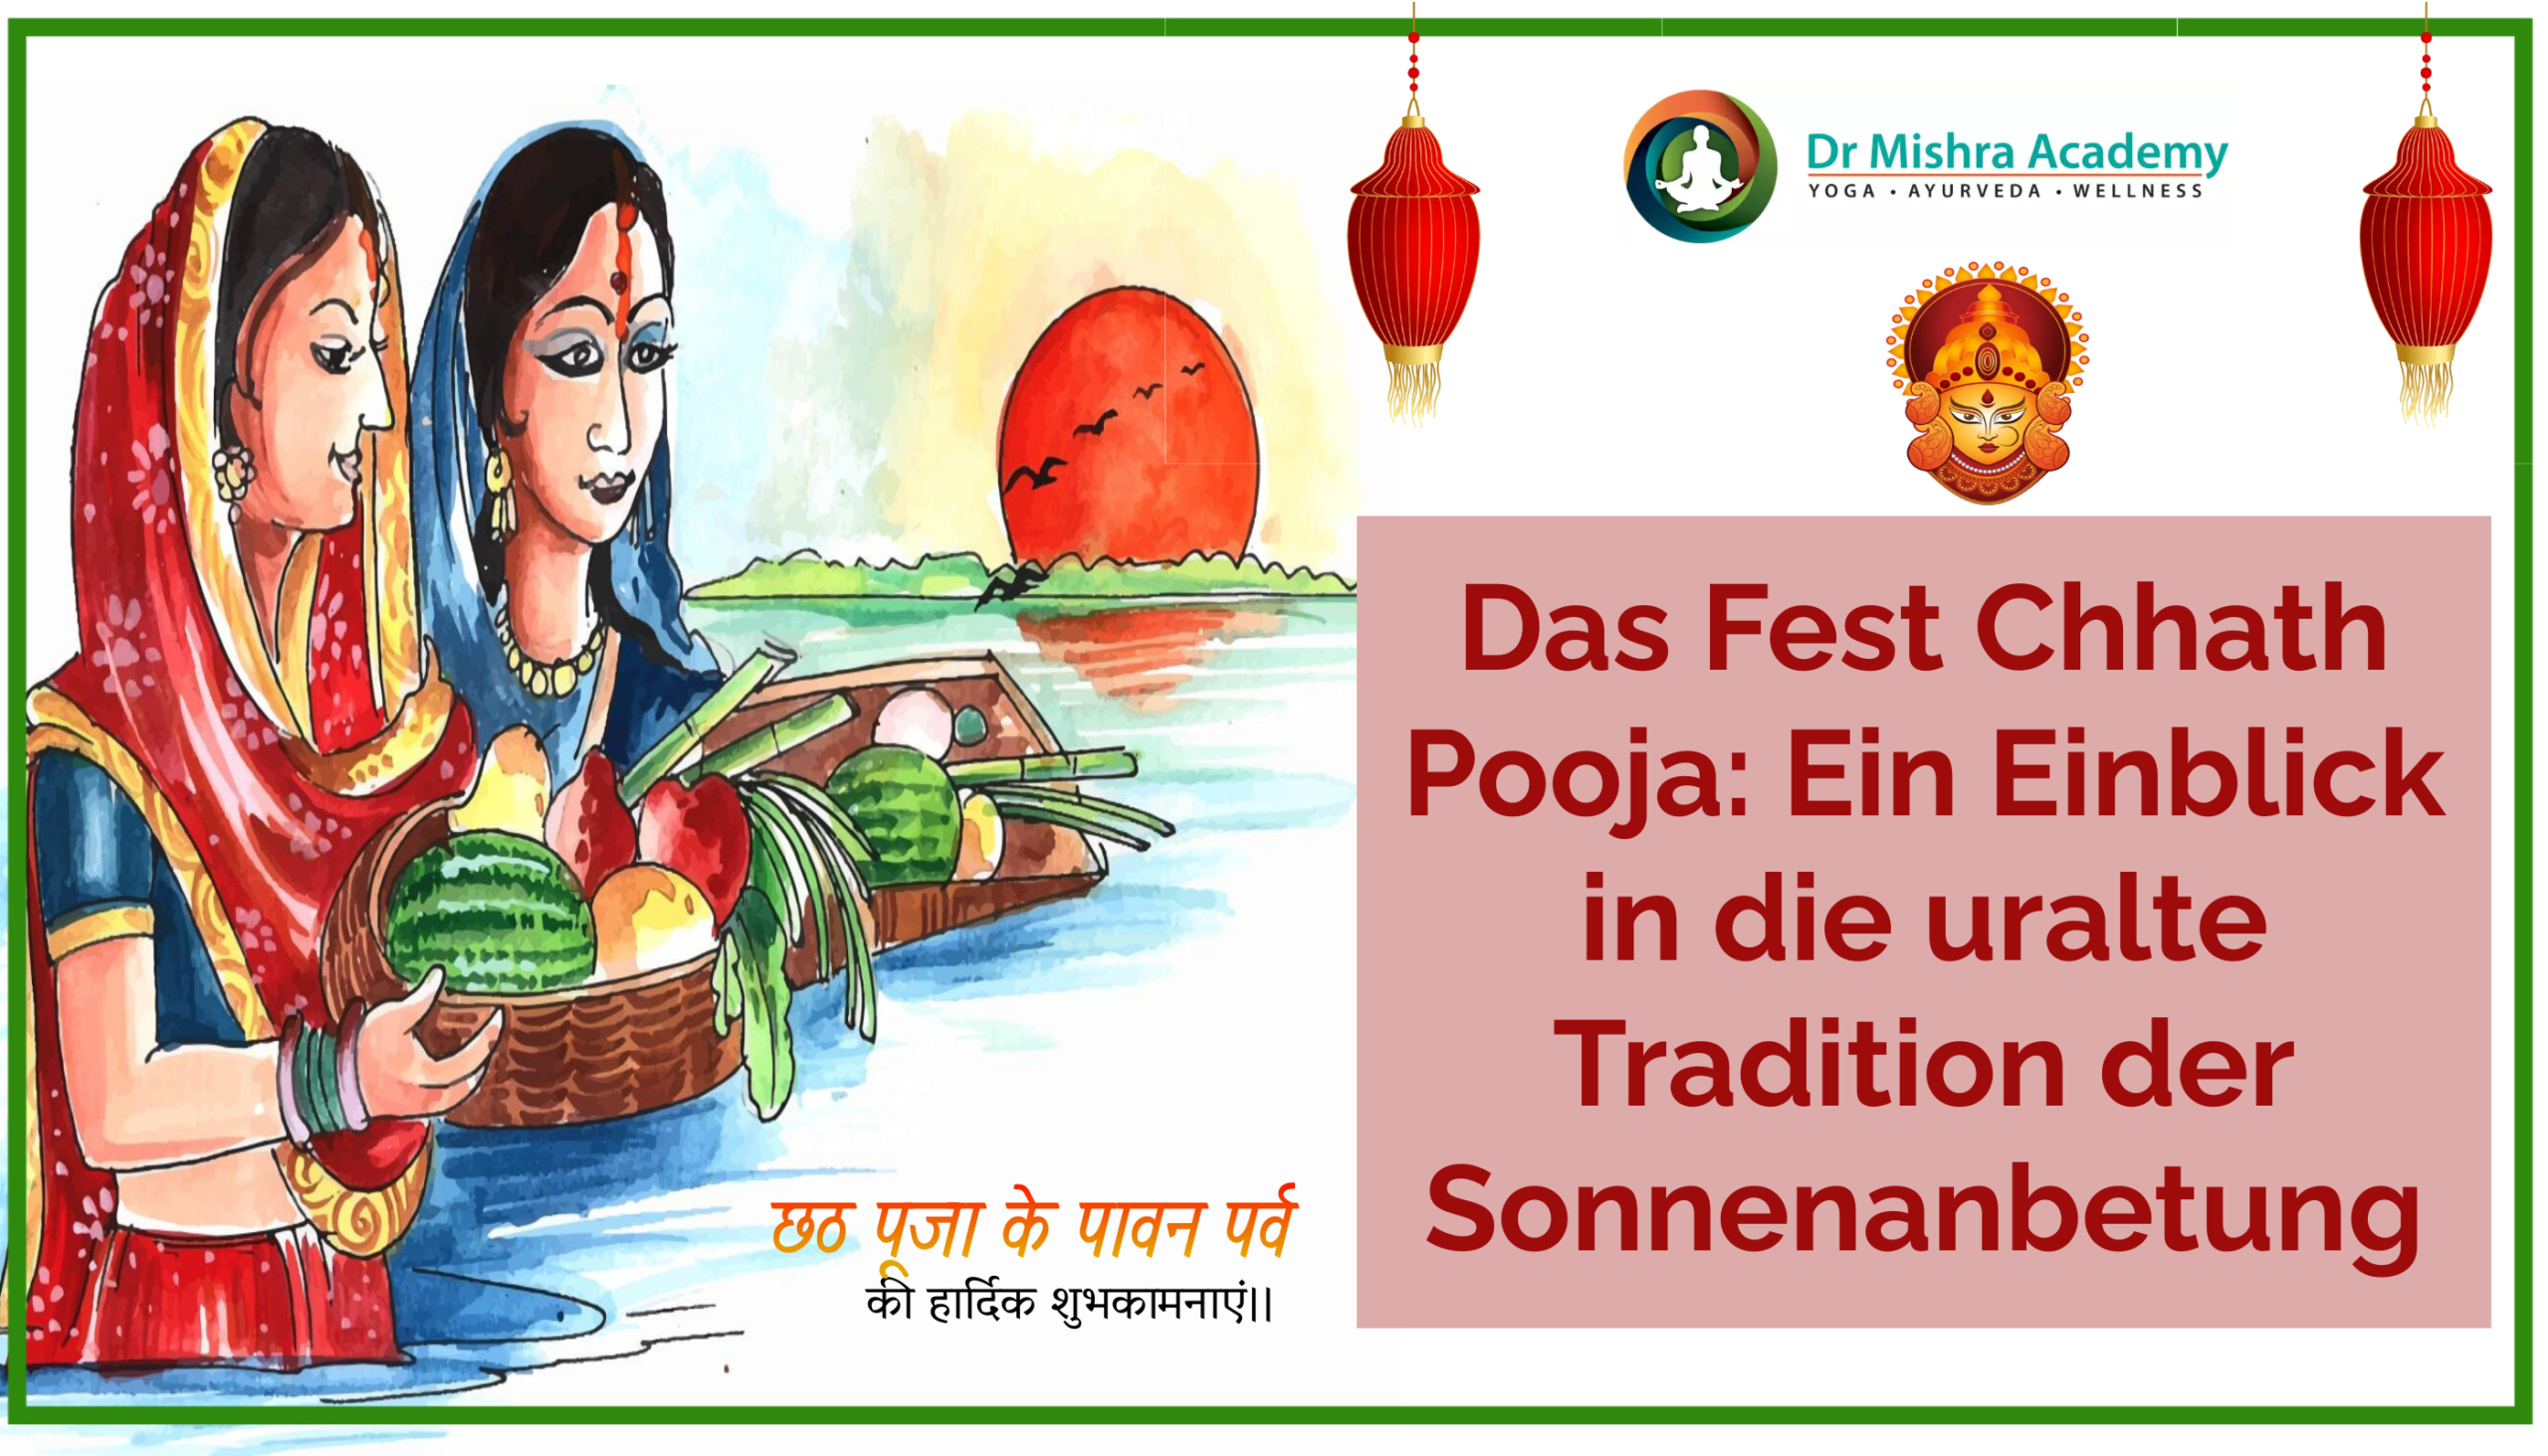 Das Fest Chhath Pooja Ein Einblick in die uralte Tradition der Sonnenanbetung